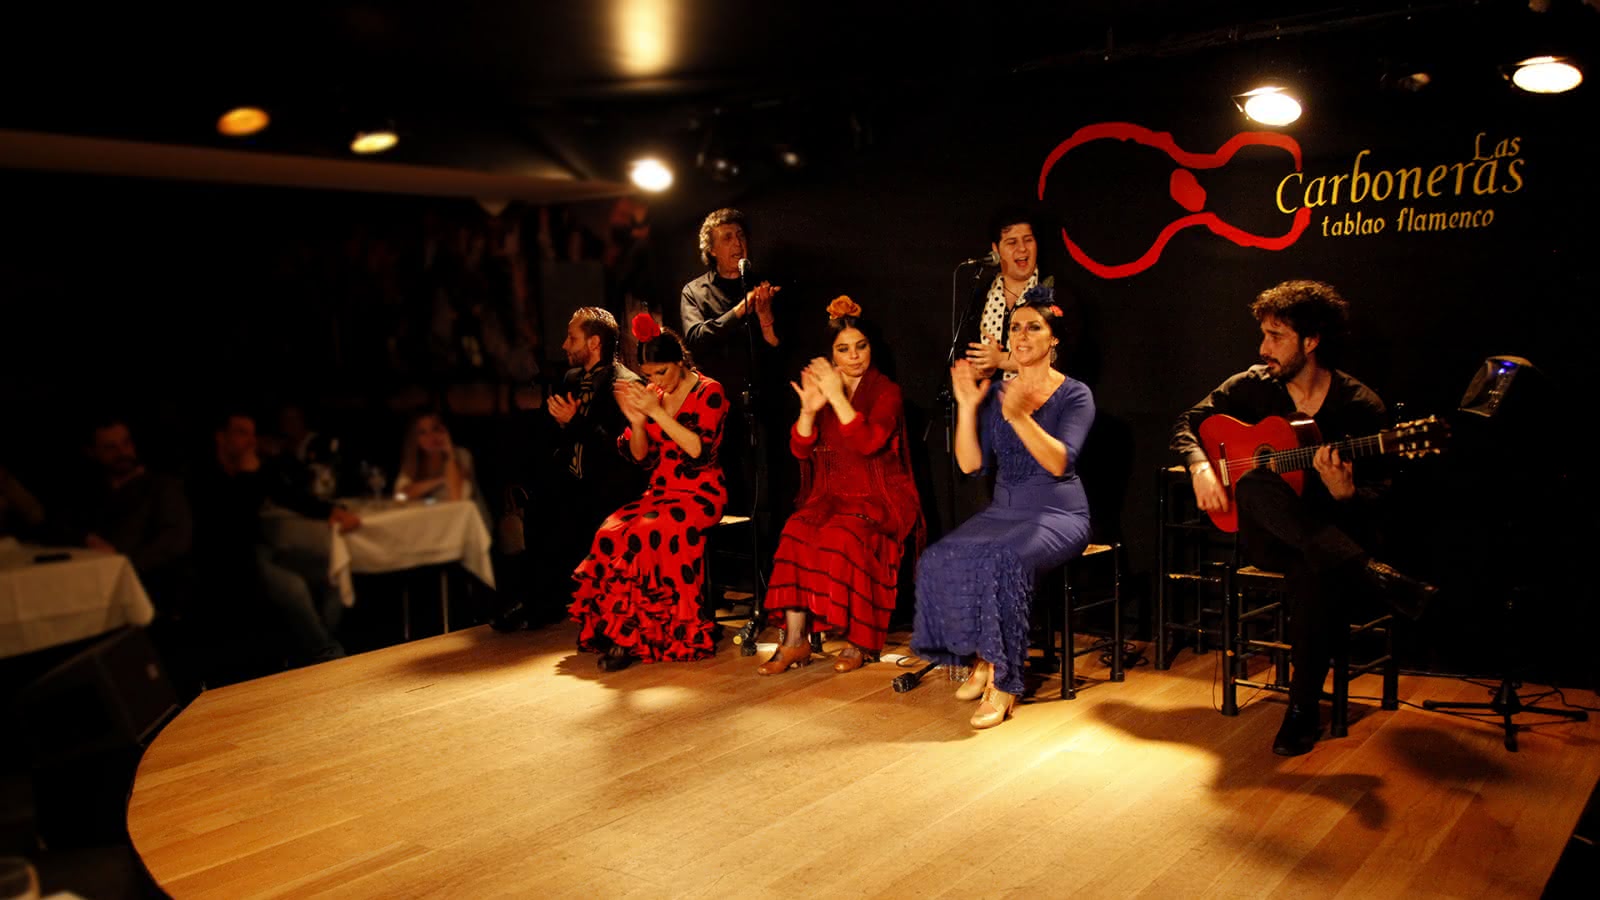 Las Carboneras tablao flamenco en Madrid